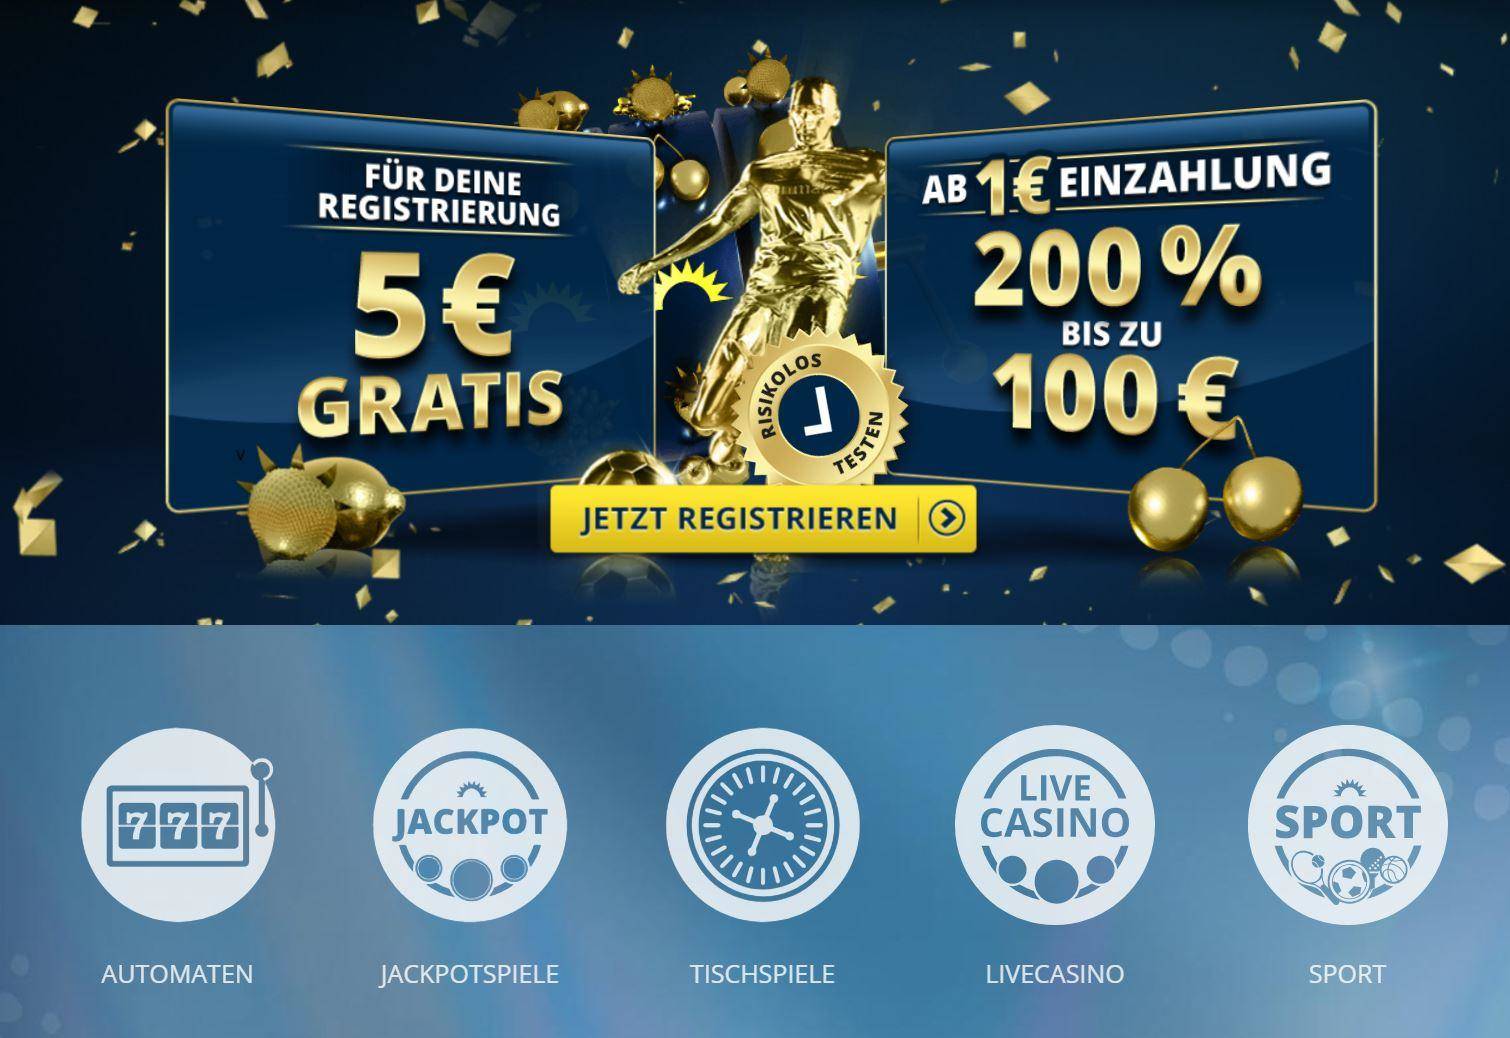 Online Casino Bonus - 1437